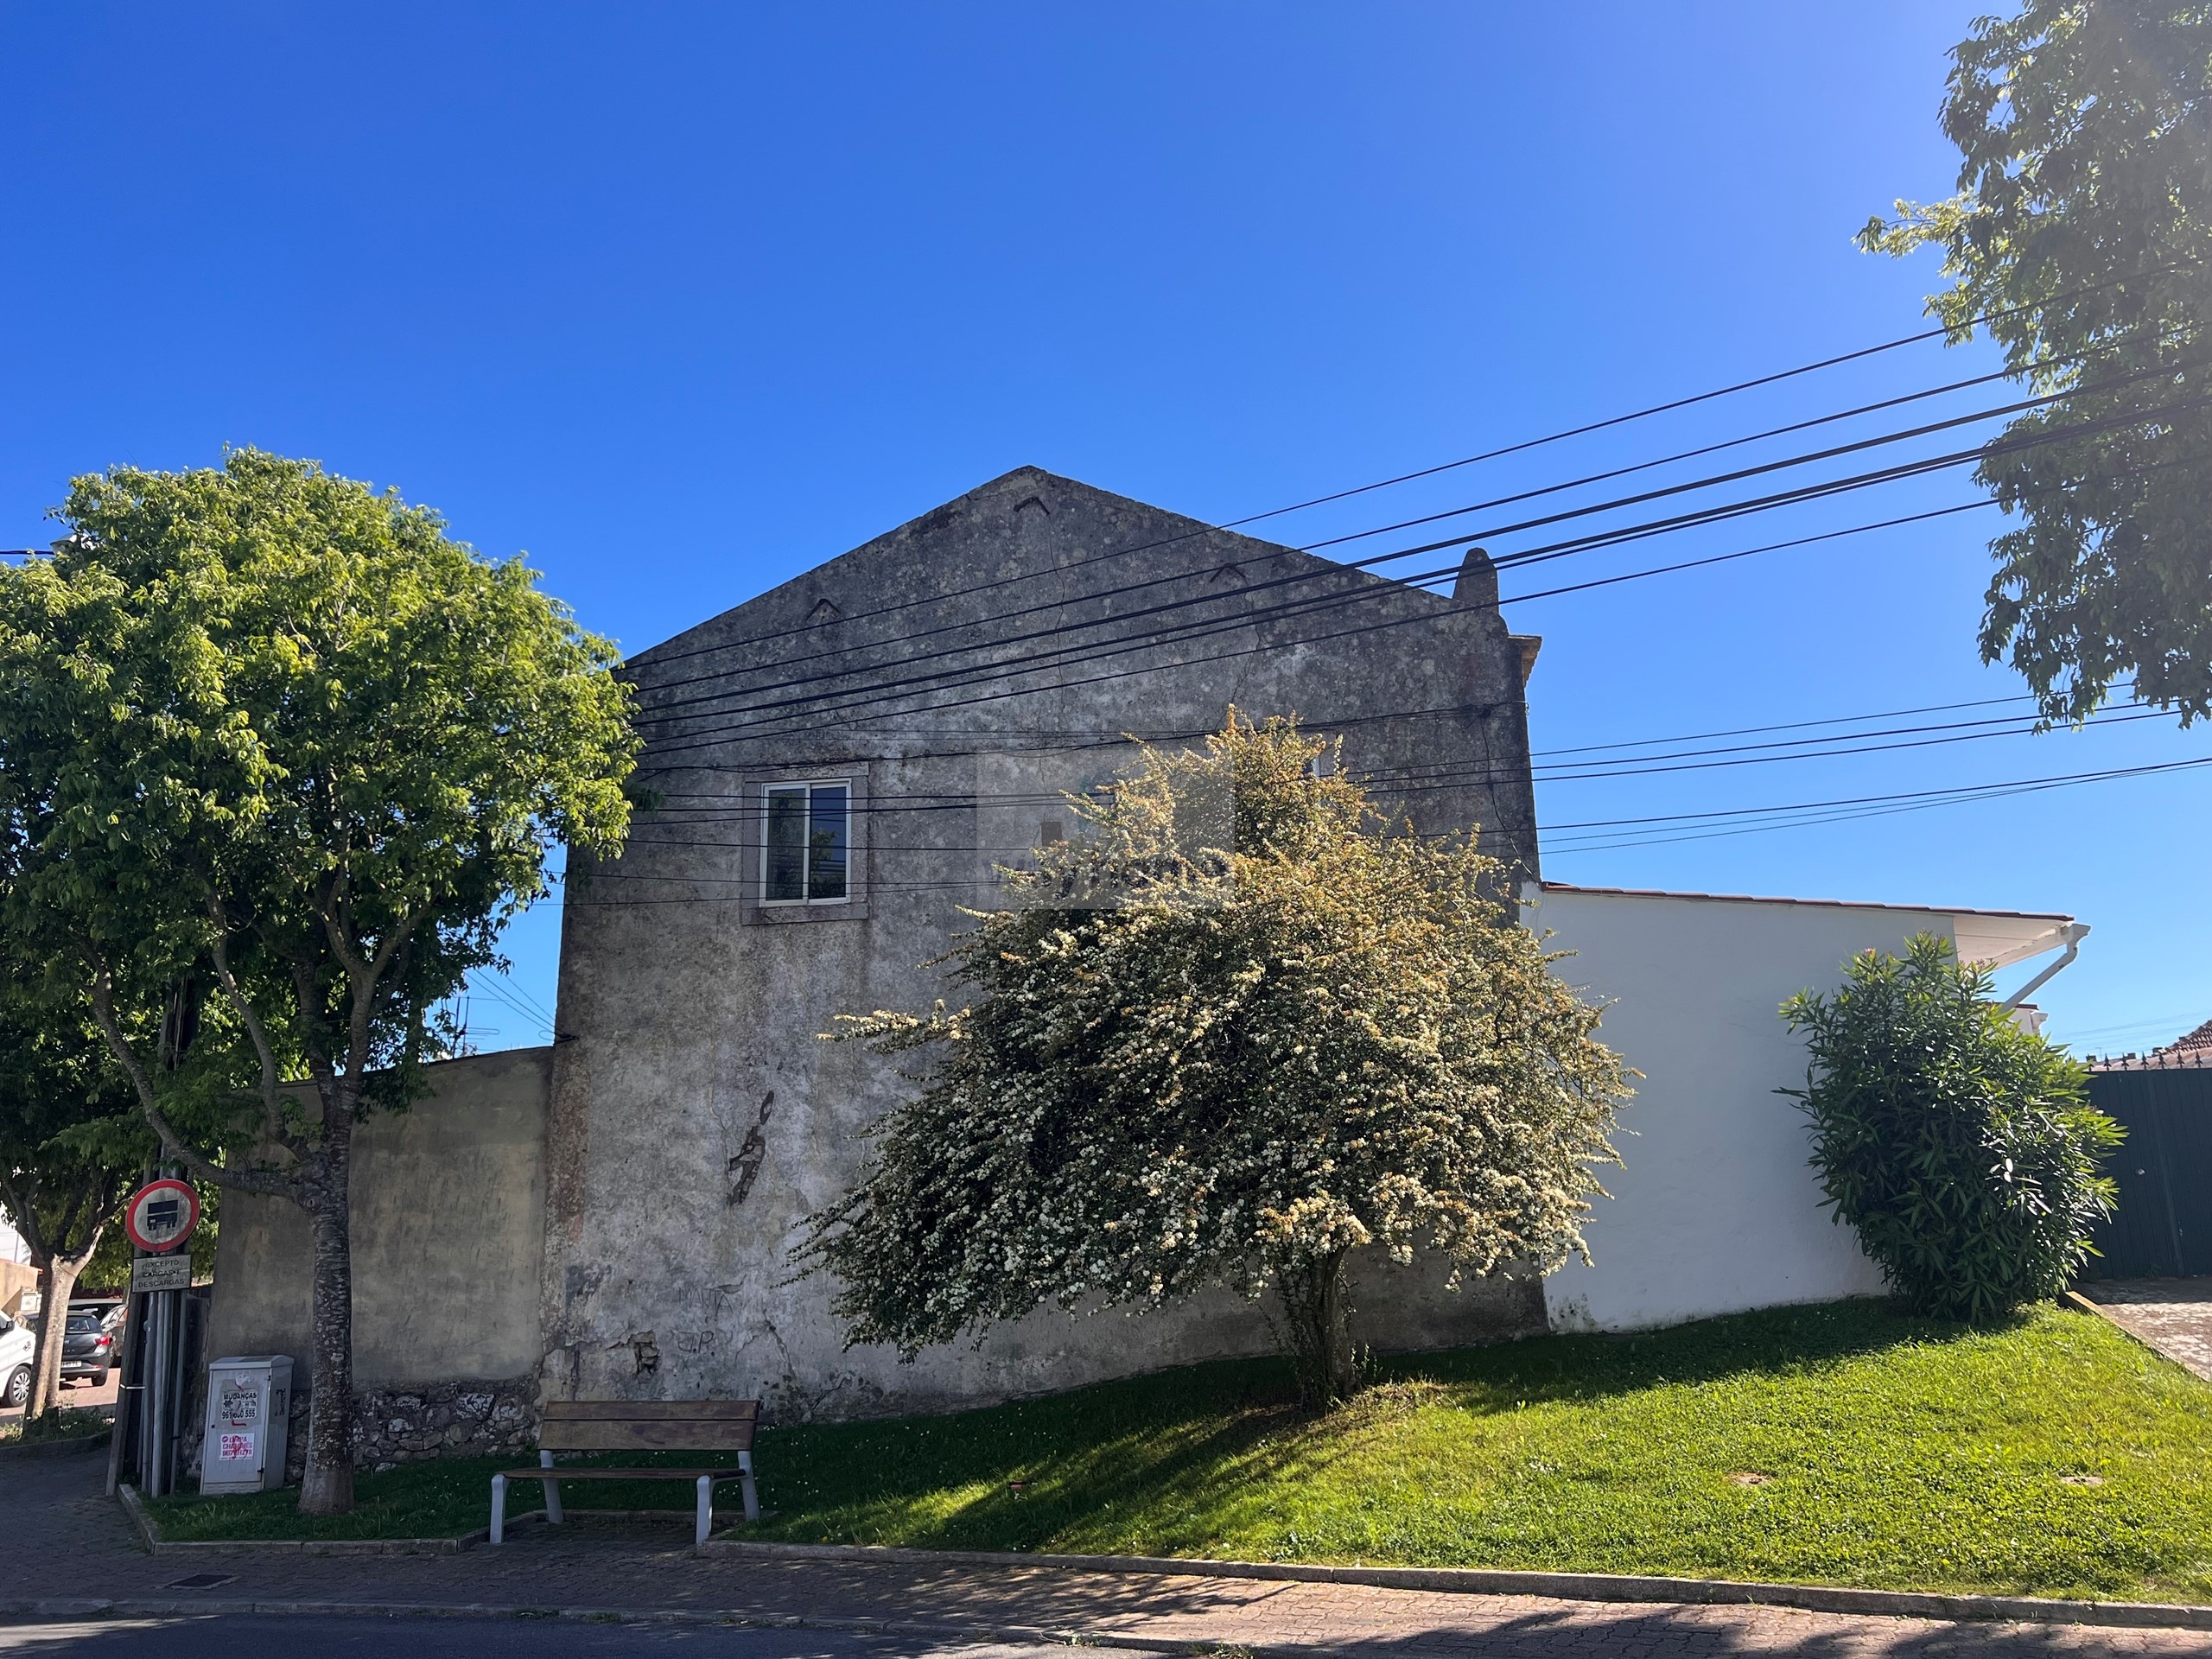 Venda - Oeiras - Porto Salvo - Apartamento T2 para remodelação total | Leião | Porto Salvo